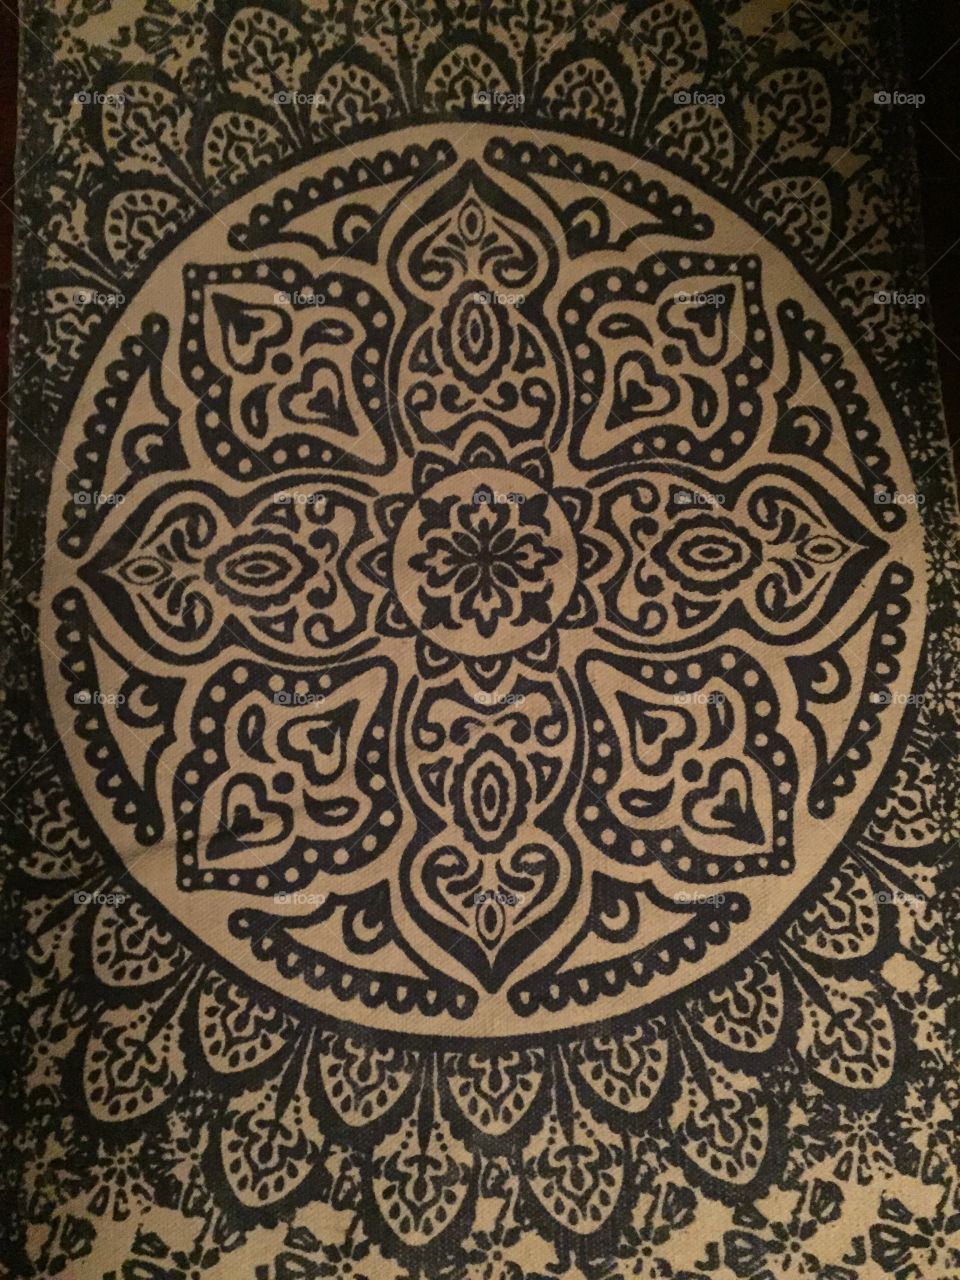 Mandela pattern rug 